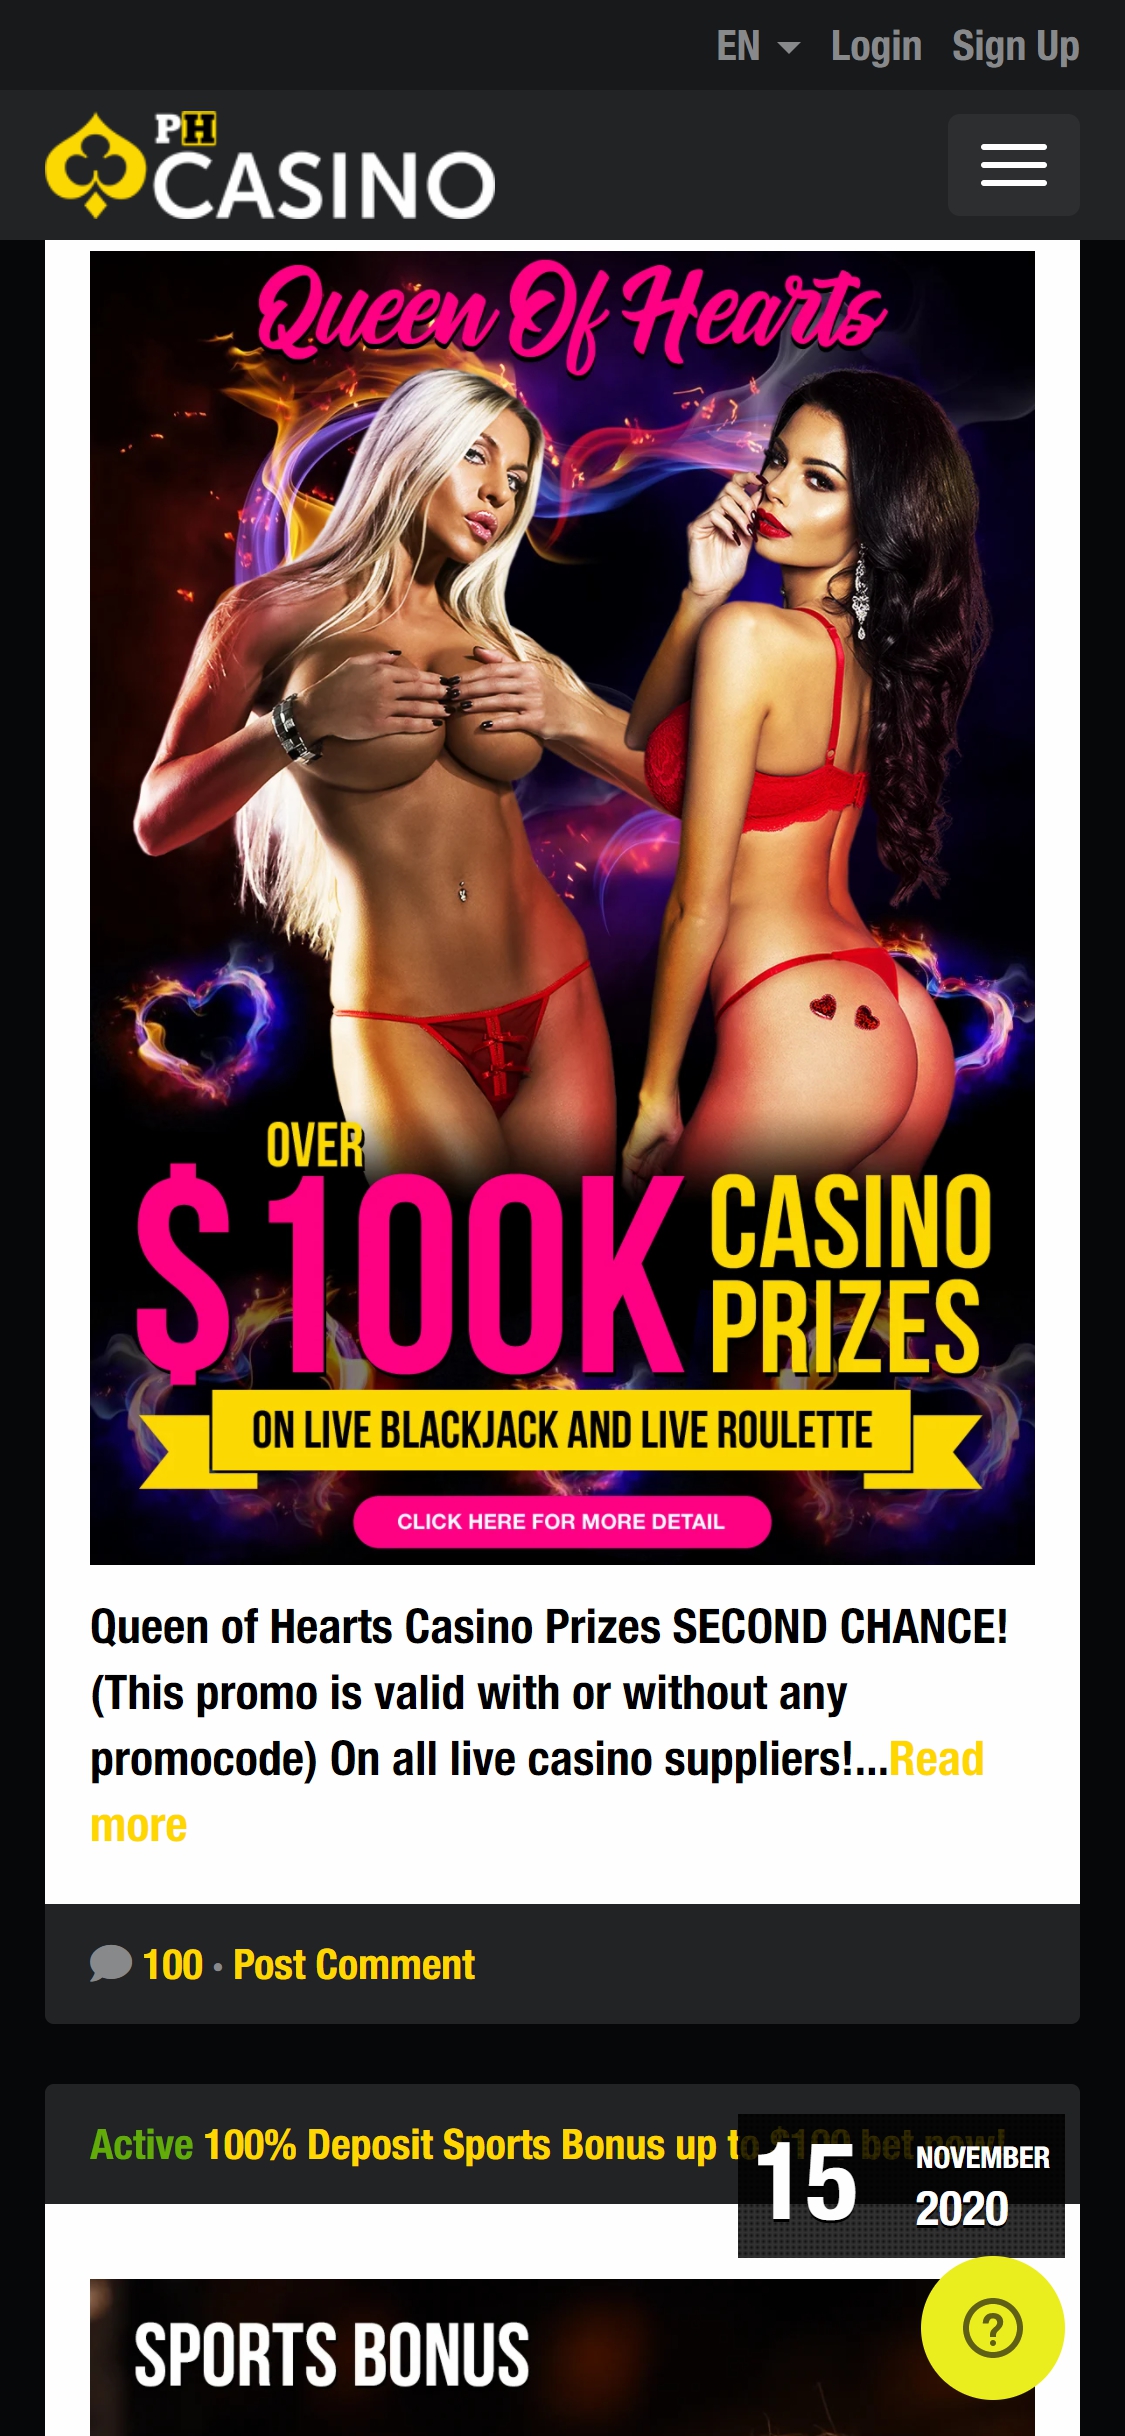 PornHub Casino Mobile No Deposit Bonus Review